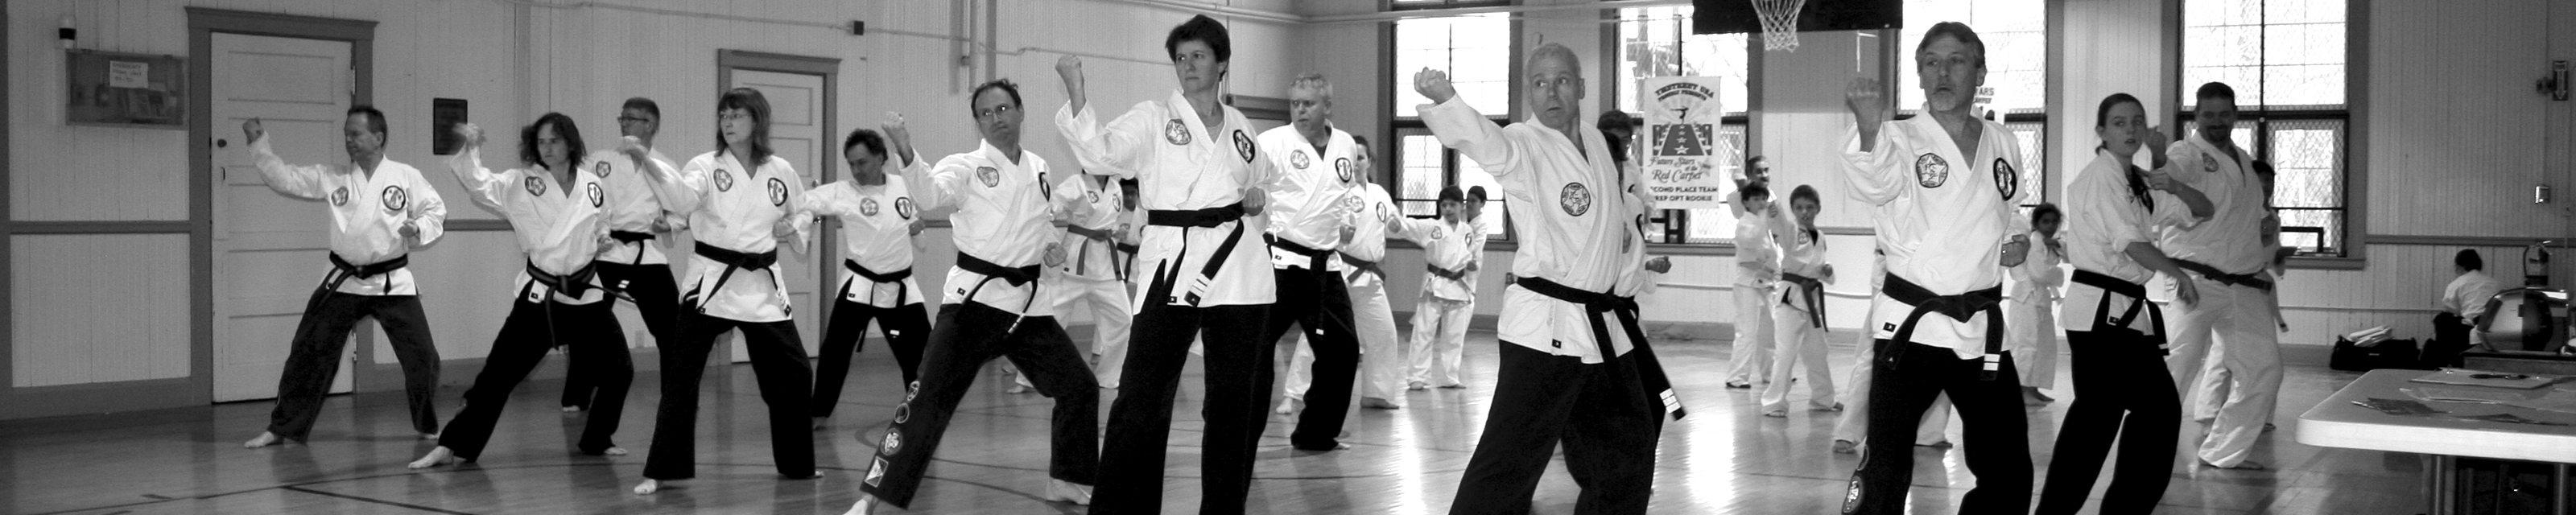 Tae Kwon Do Karate Club